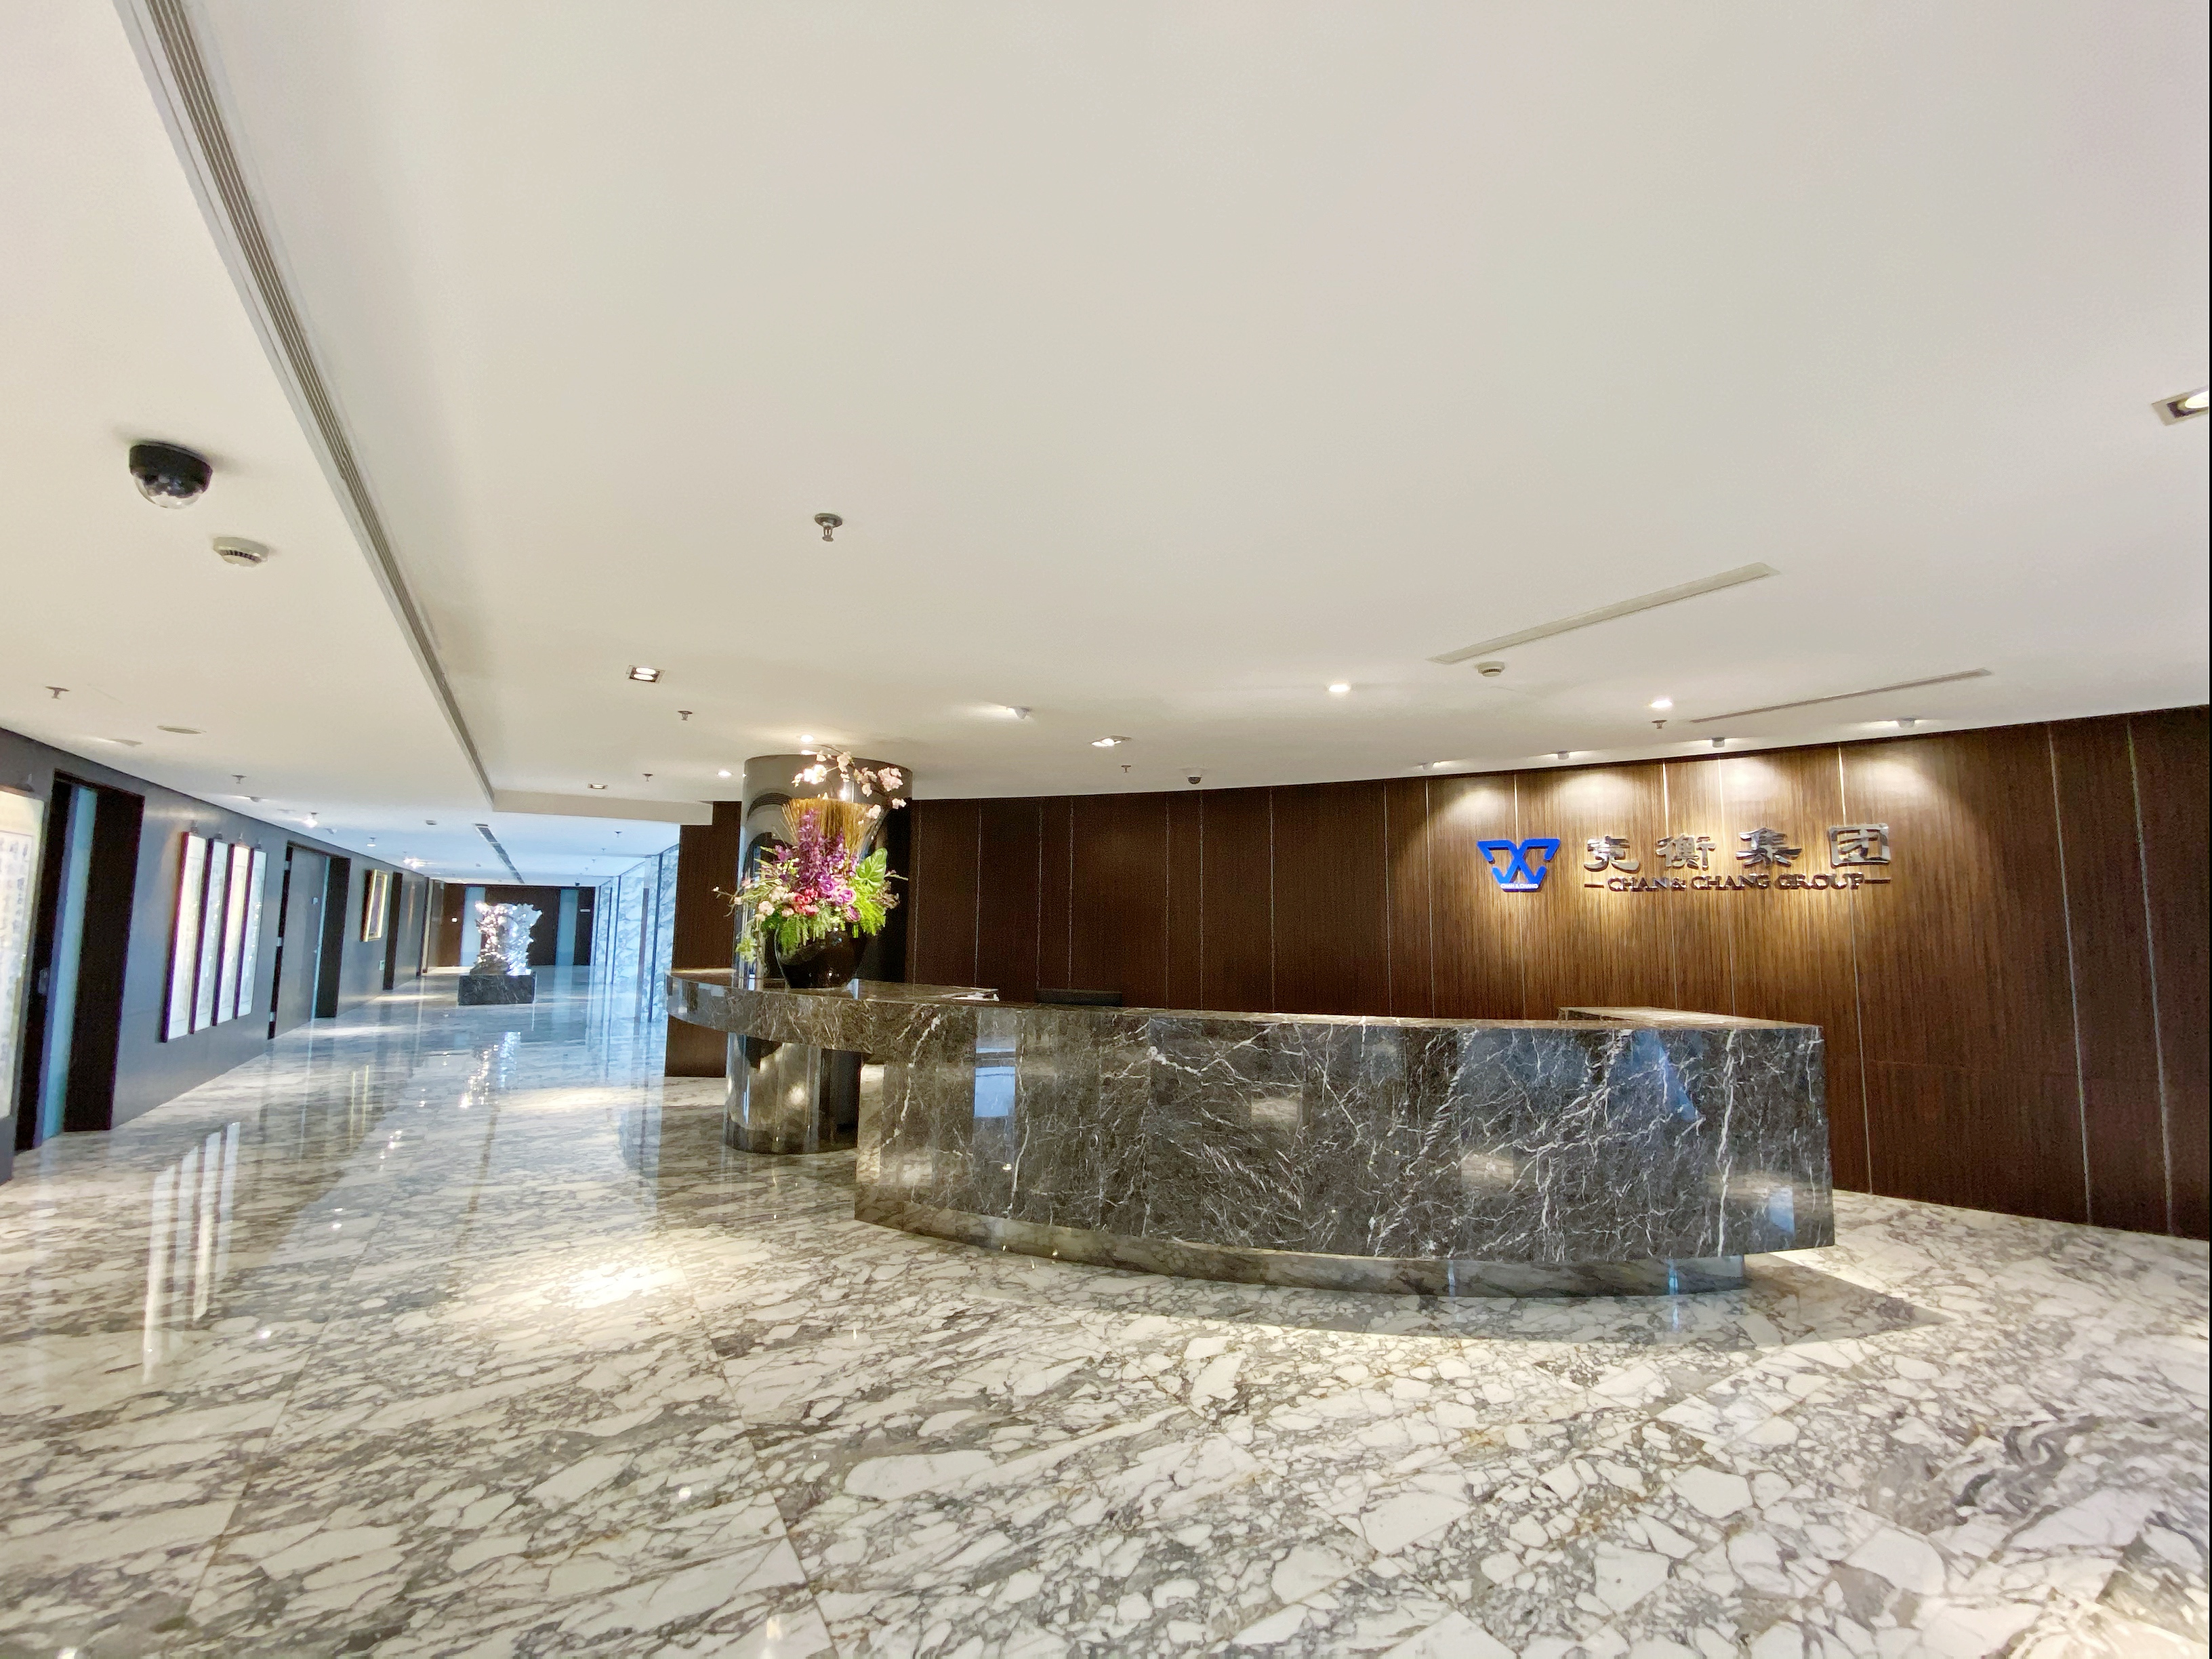 发展重心移至上海，总部设立于金融中心陆家嘴金茂大厦，以法律、财务咨询业务为立足点，探索新的市场与业务领域。